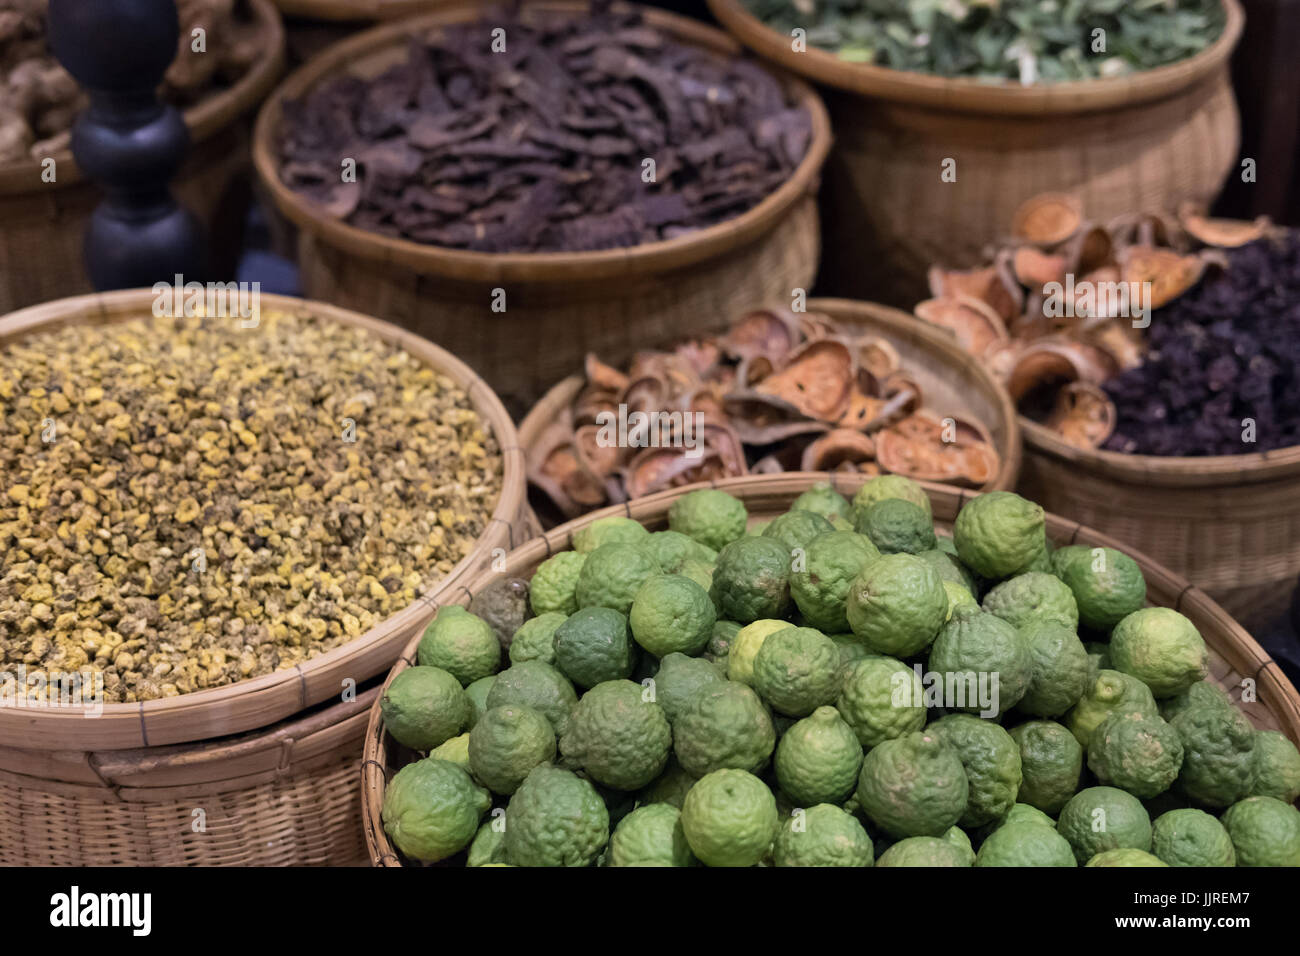 Haufen von Kaffir lime, getrocknete Ballen Obst, Chrysantheme. Kraut, Gesundheit, Wellness-Konzept Stockfoto